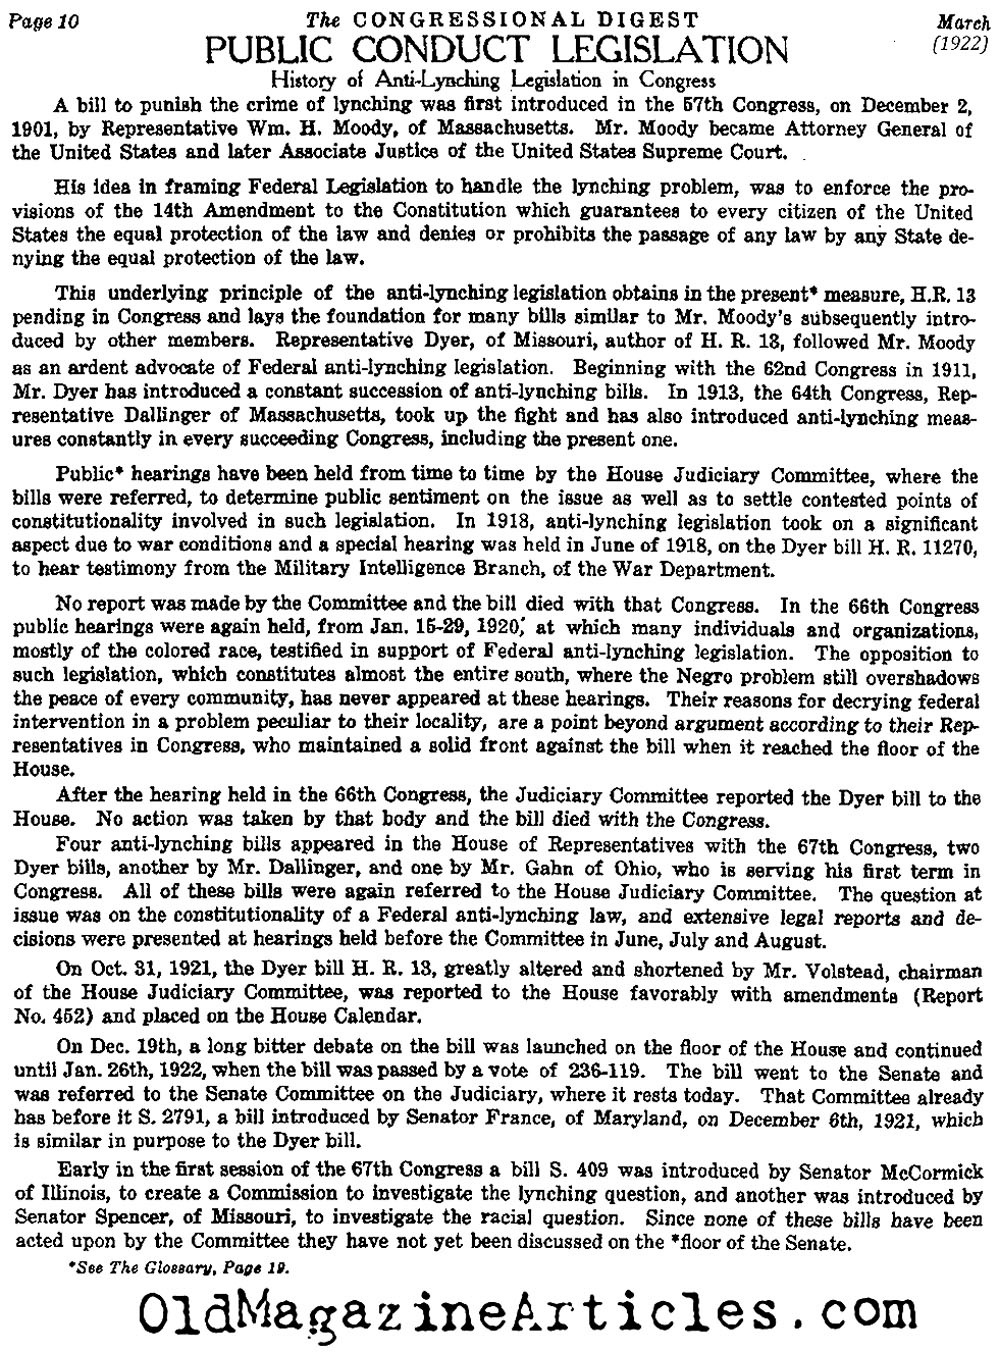 A History of Anti-Lynching Legislation (Congressional Digest, 1922)